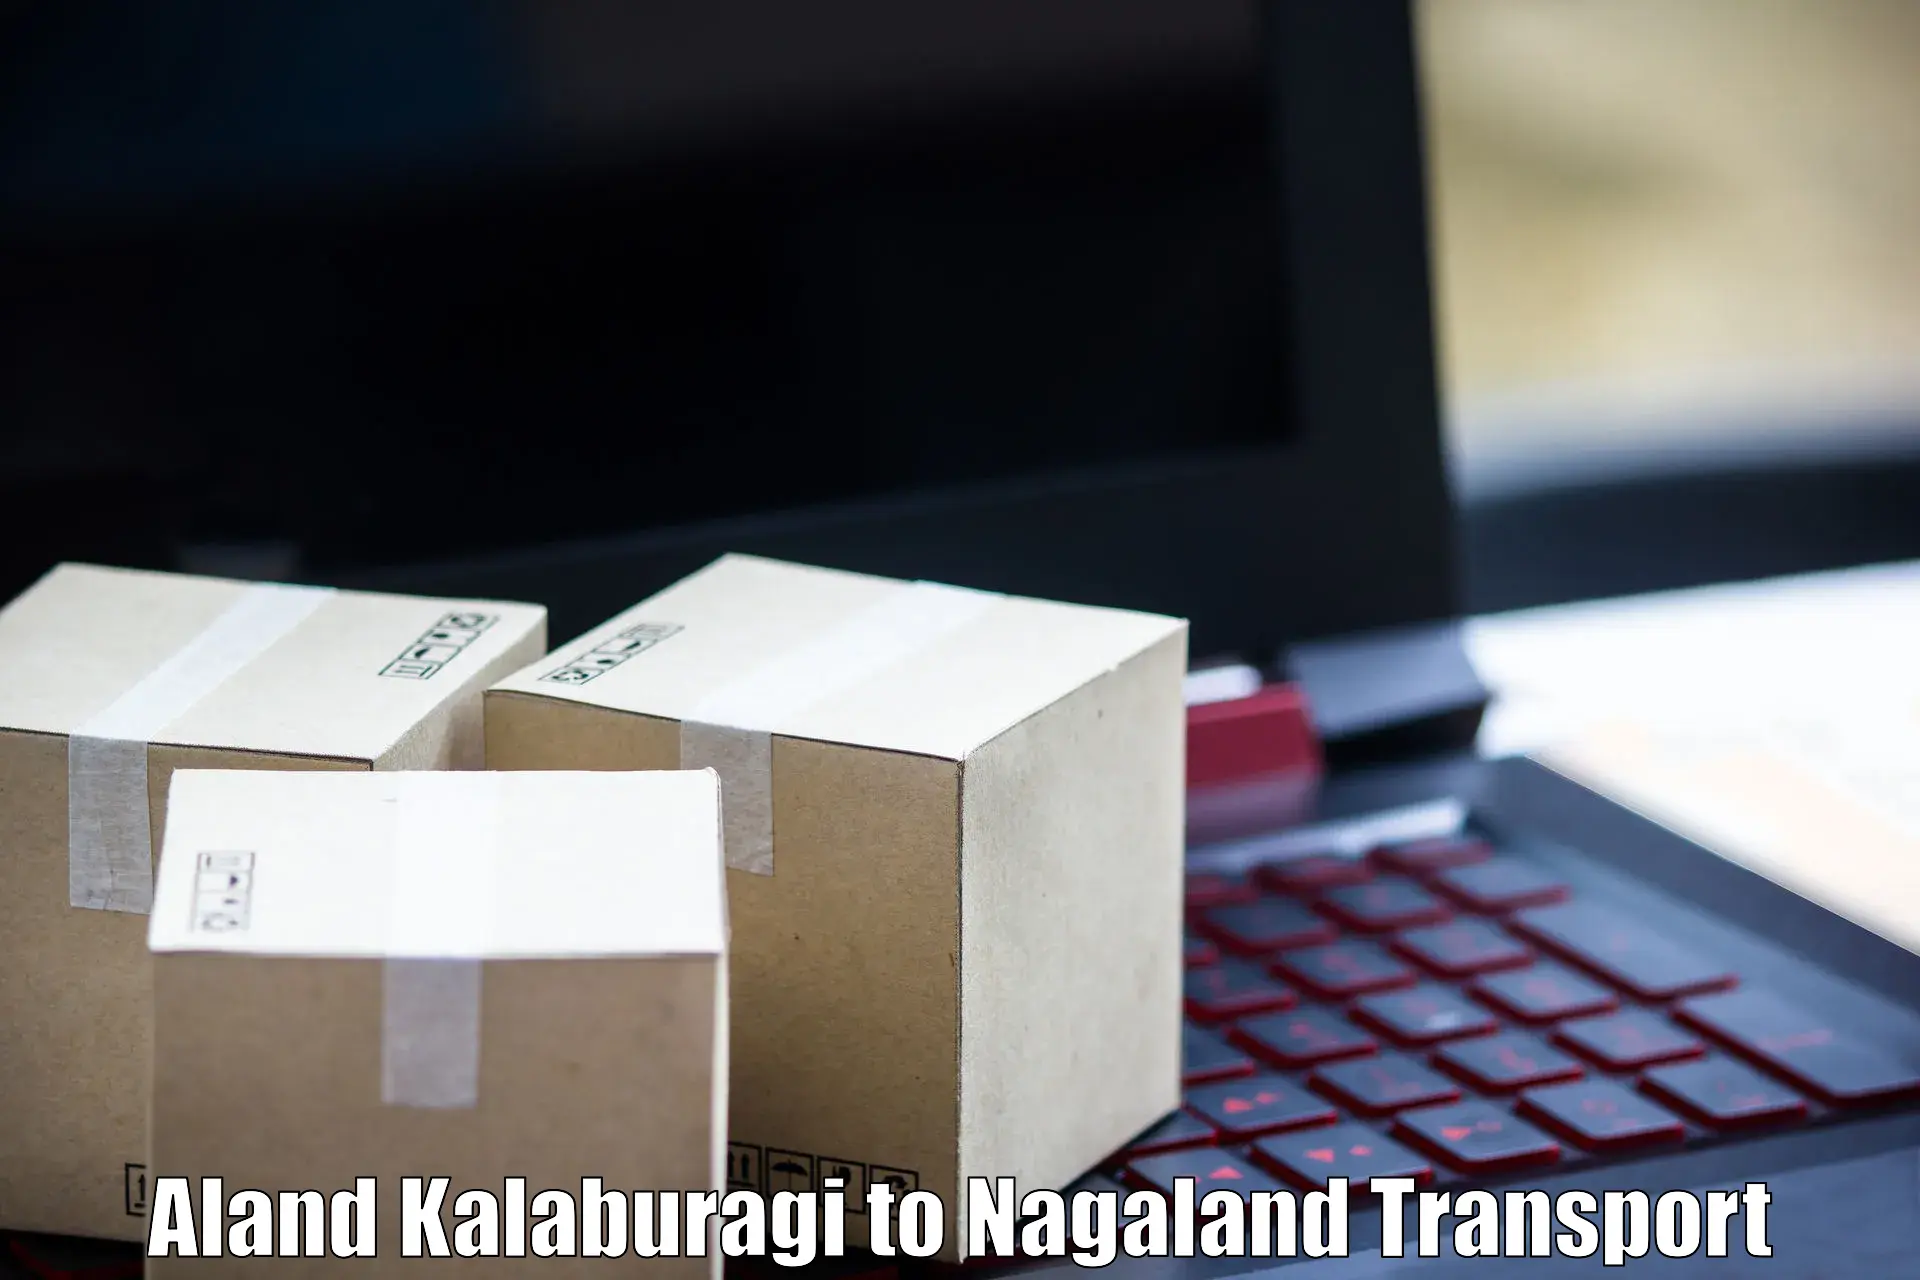 Online transport service Aland Kalaburagi to Nagaland